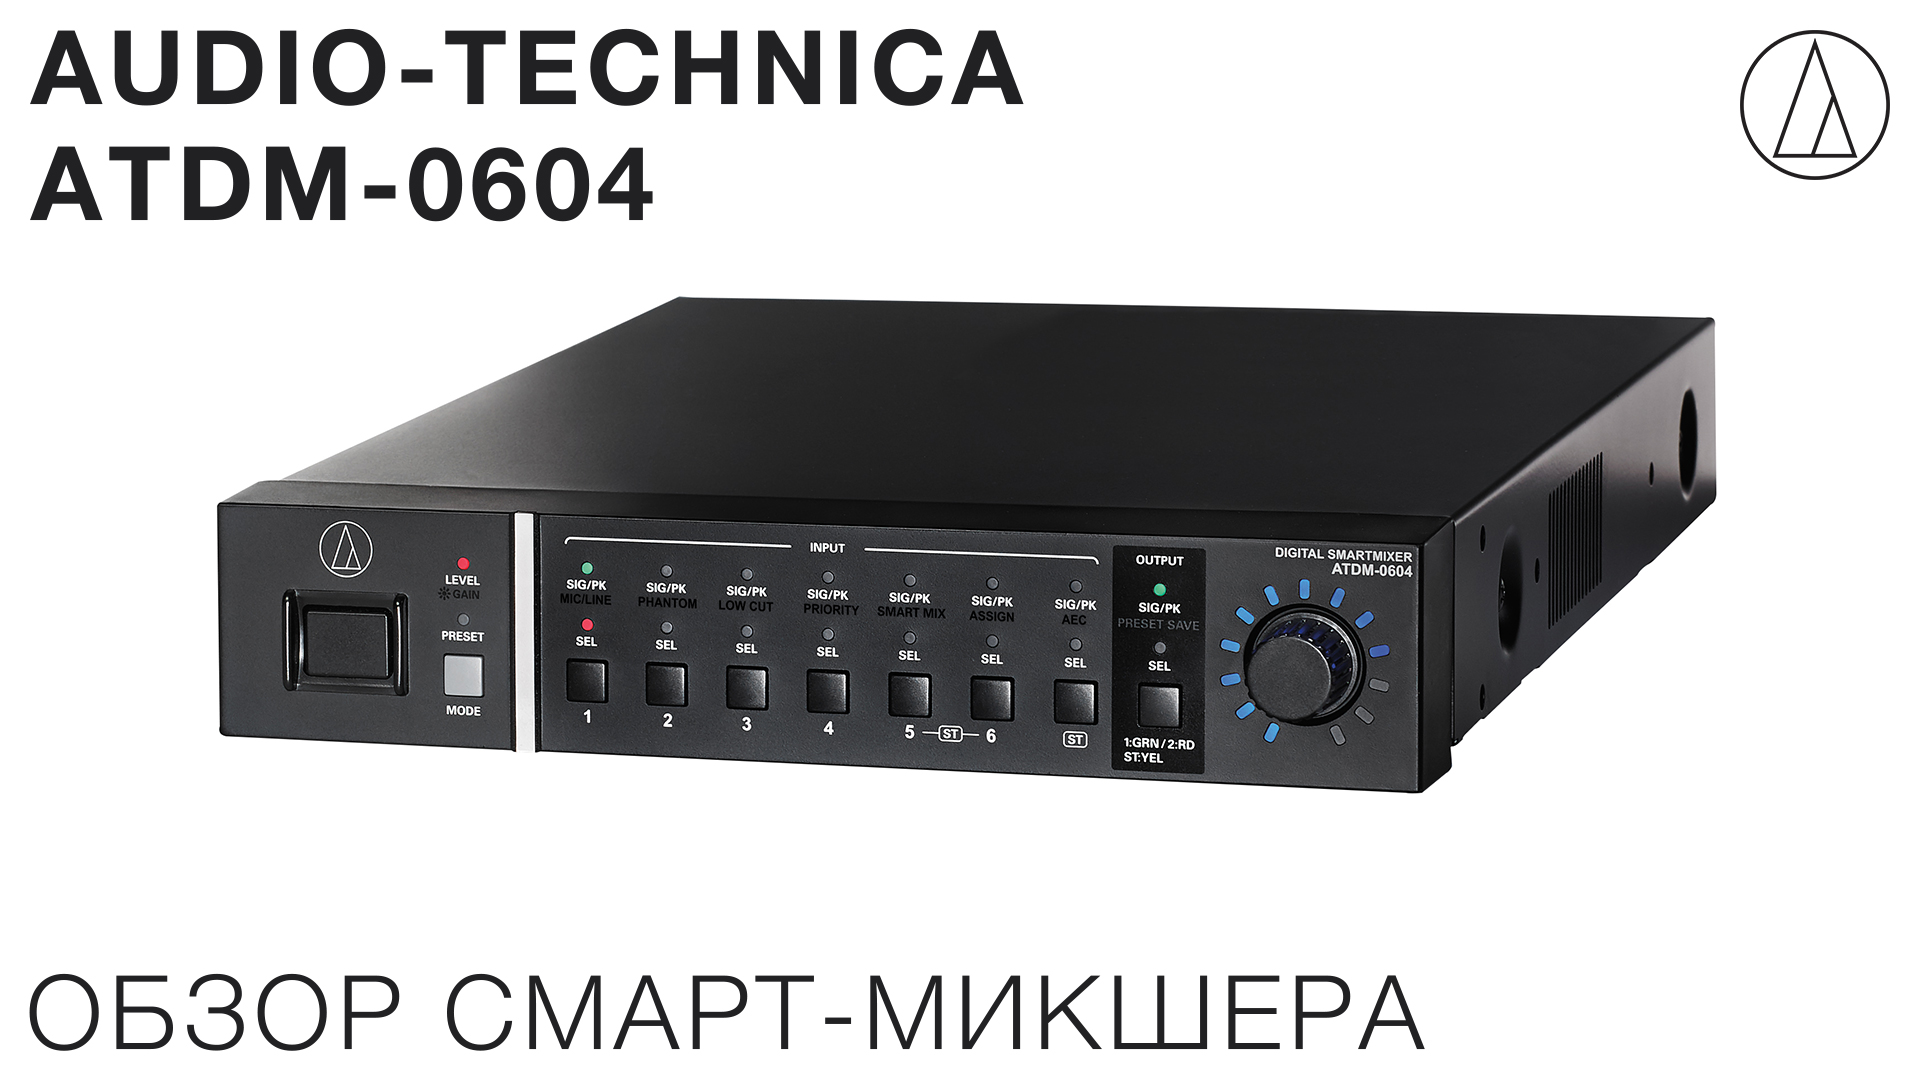 Обзор смарт-микшера Audio-Technica ATDM-0604